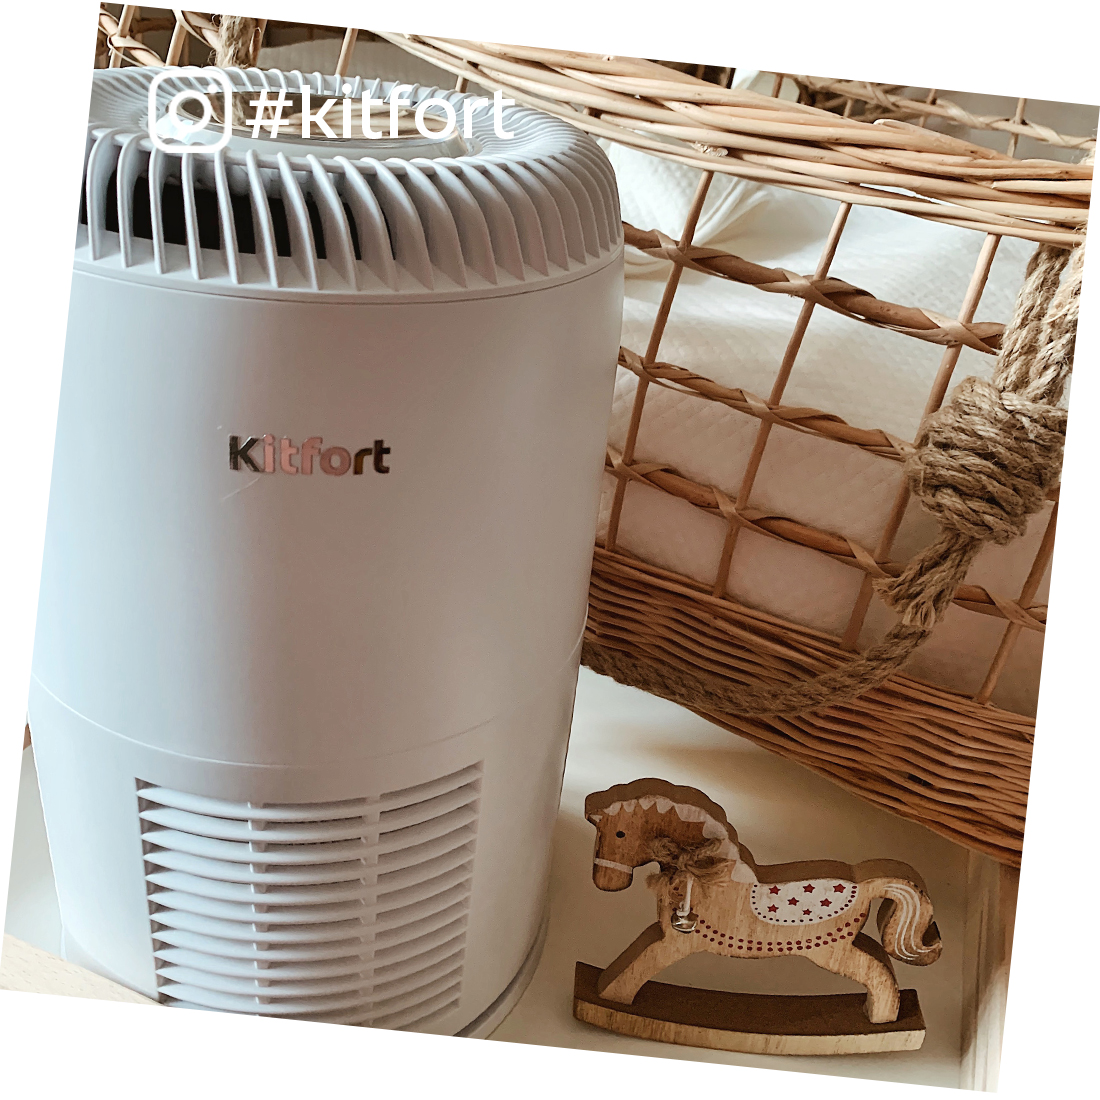 Очиститель воздуха Kitfort KT-2812